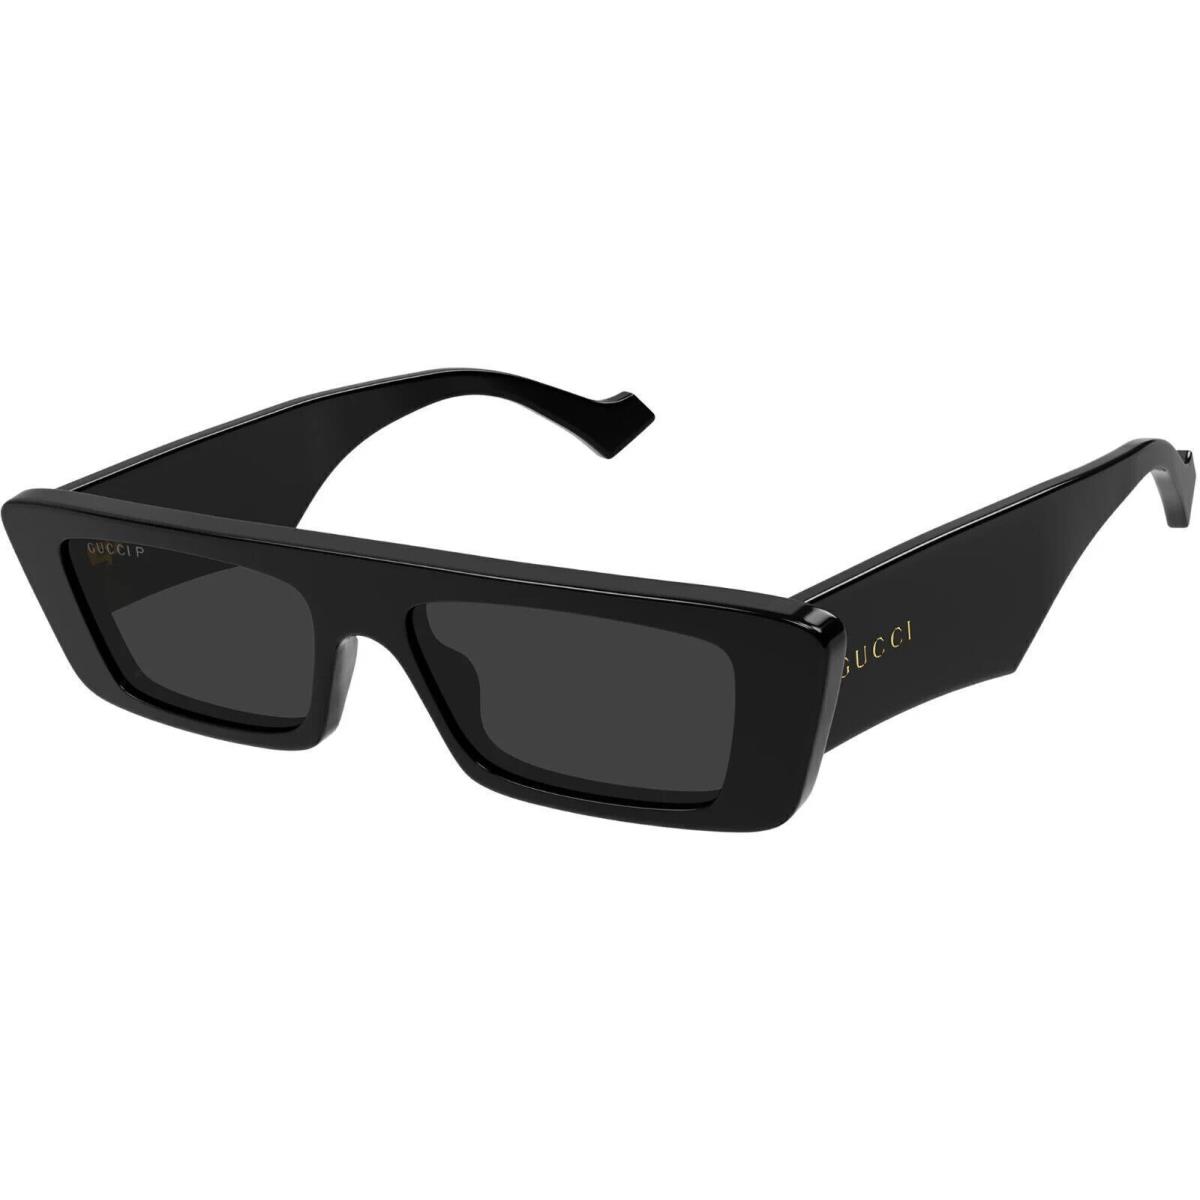 Gucci GG1331S-002 Black Black Brown Sunglasses